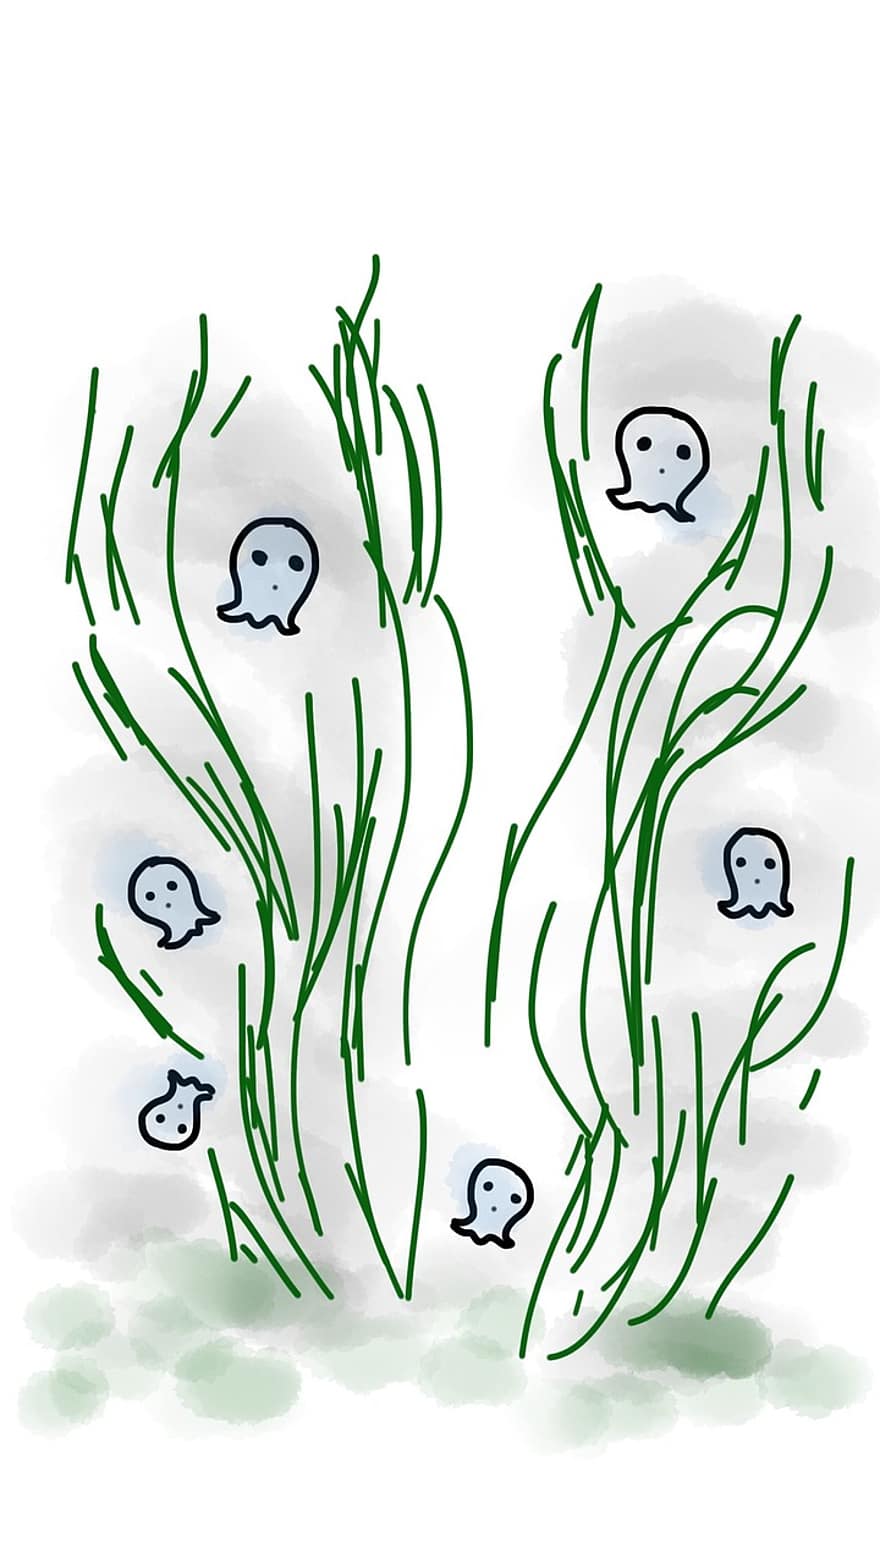 fantôme, herbe, Halloween, mystère, flottant, ténèbres, peur, vert, petit fantôme, effrayant, esquisser